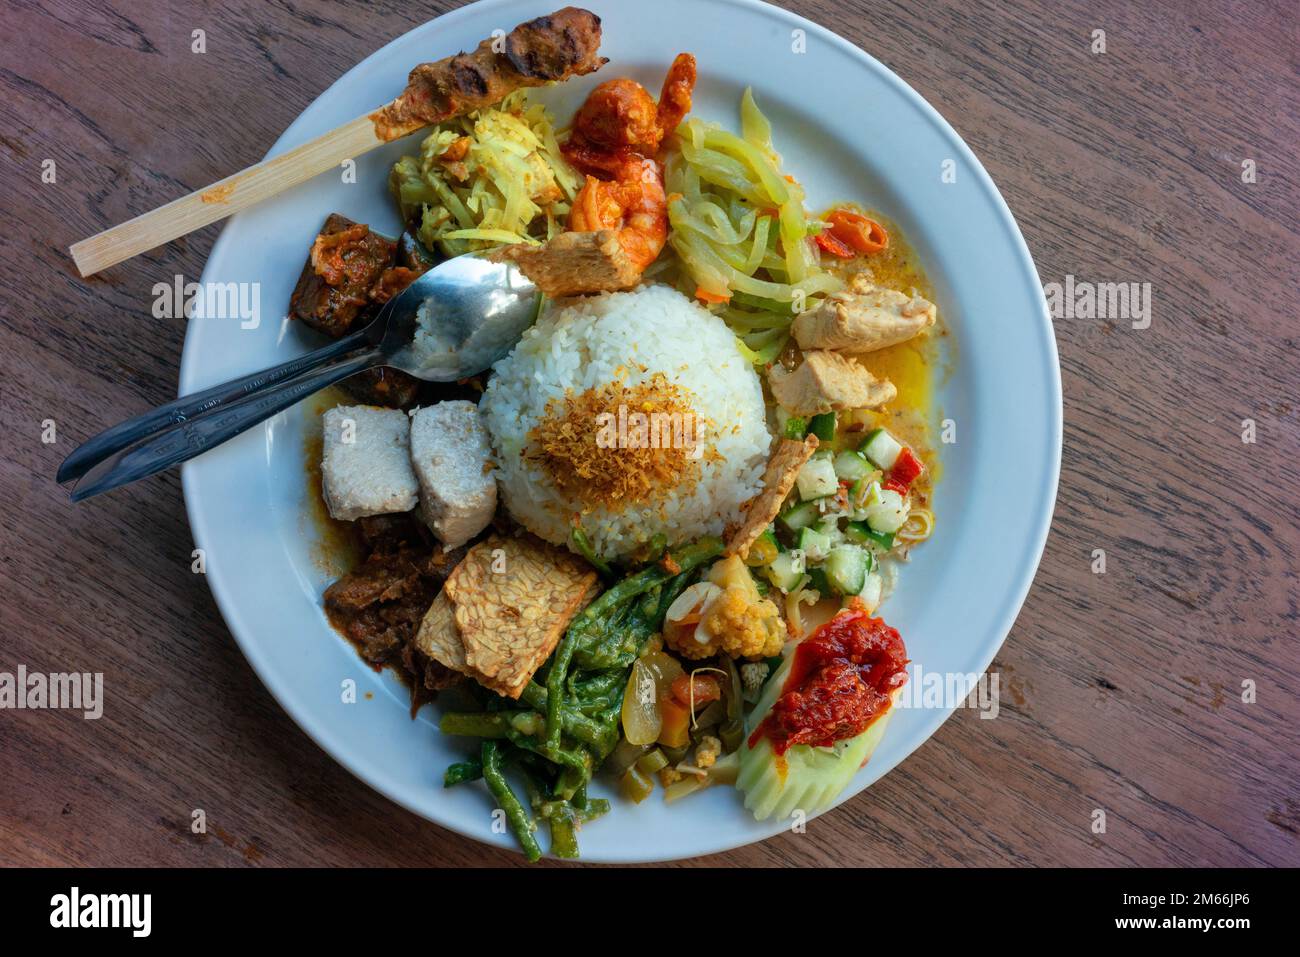 Nasi campur (mixed rice) at a restaurant in Kuta. Stock Photo